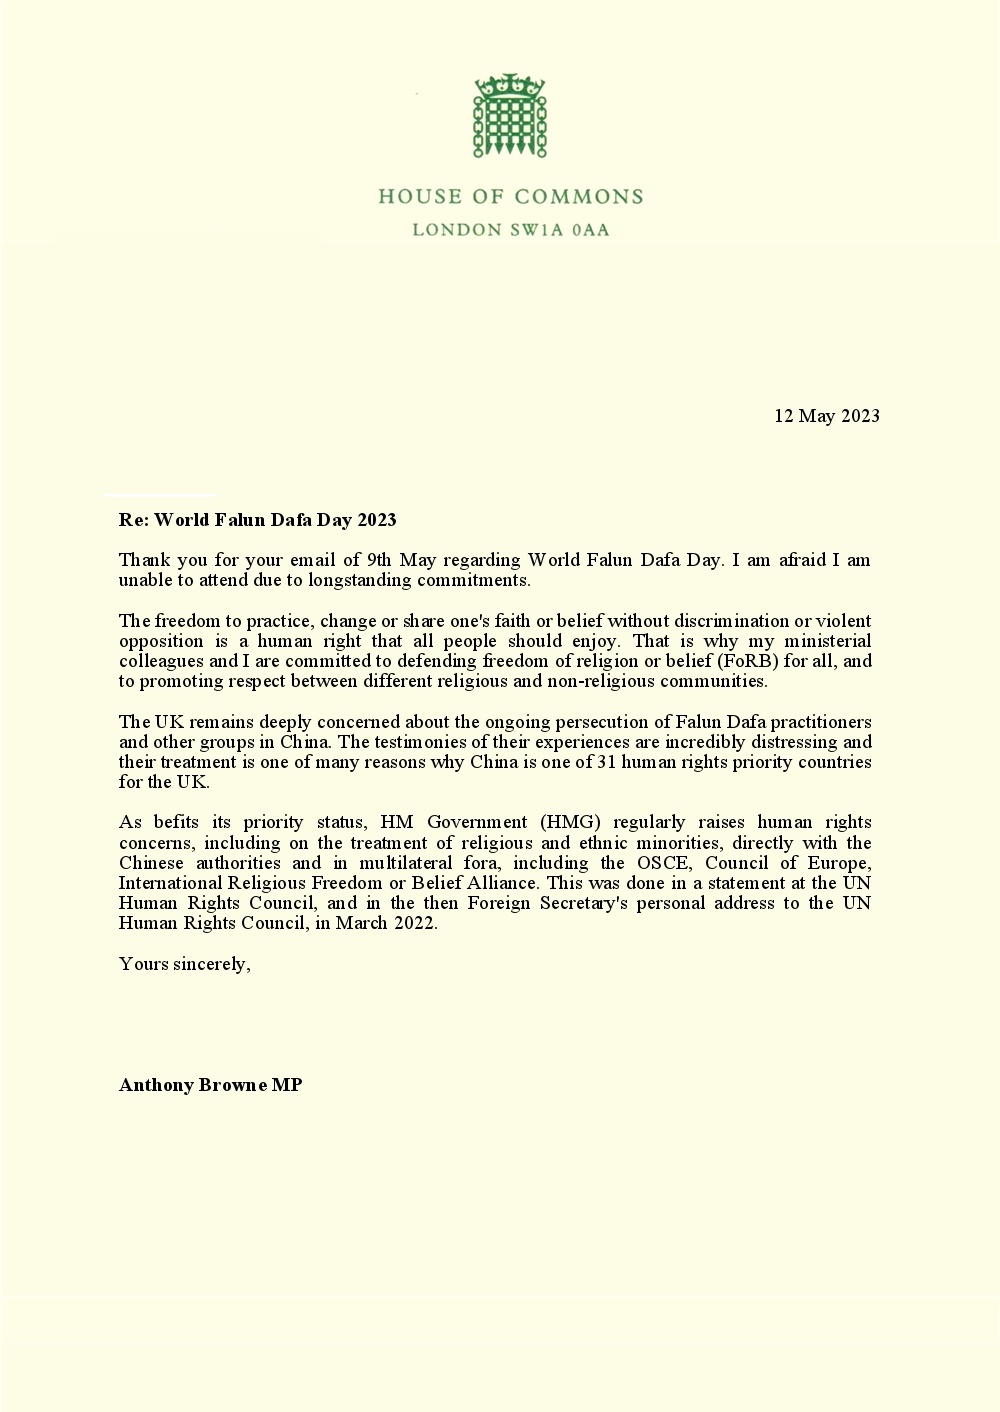 圖3～4：安東尼﹒布朗議員（Anthony Browne MP）及來信原件